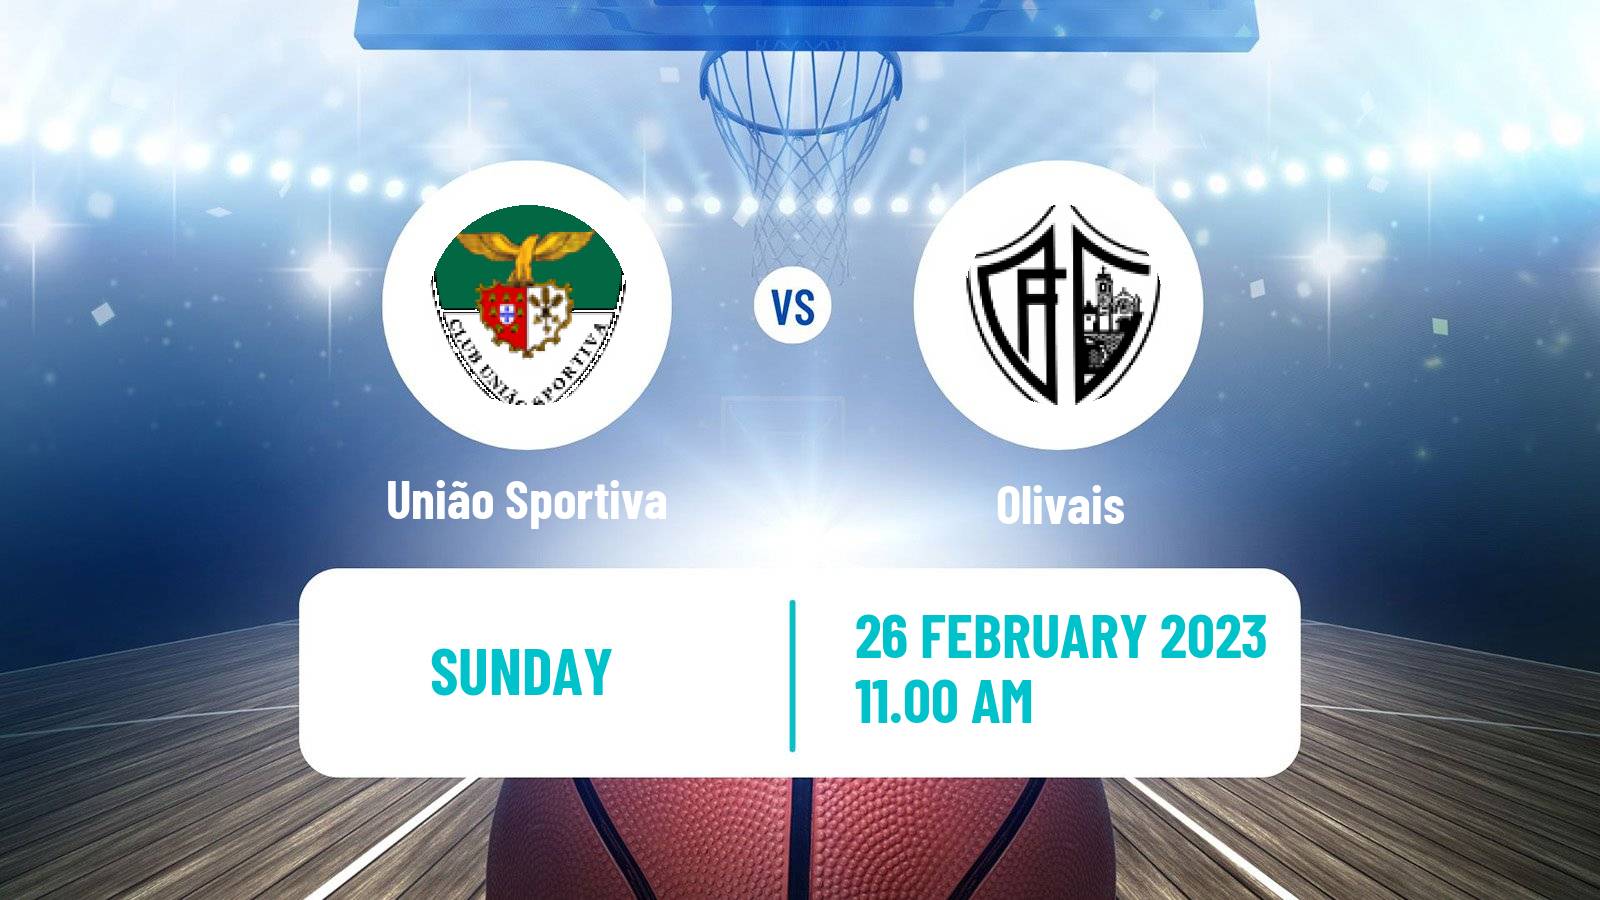 Basketball Portuguese LFB União Sportiva - Olivais